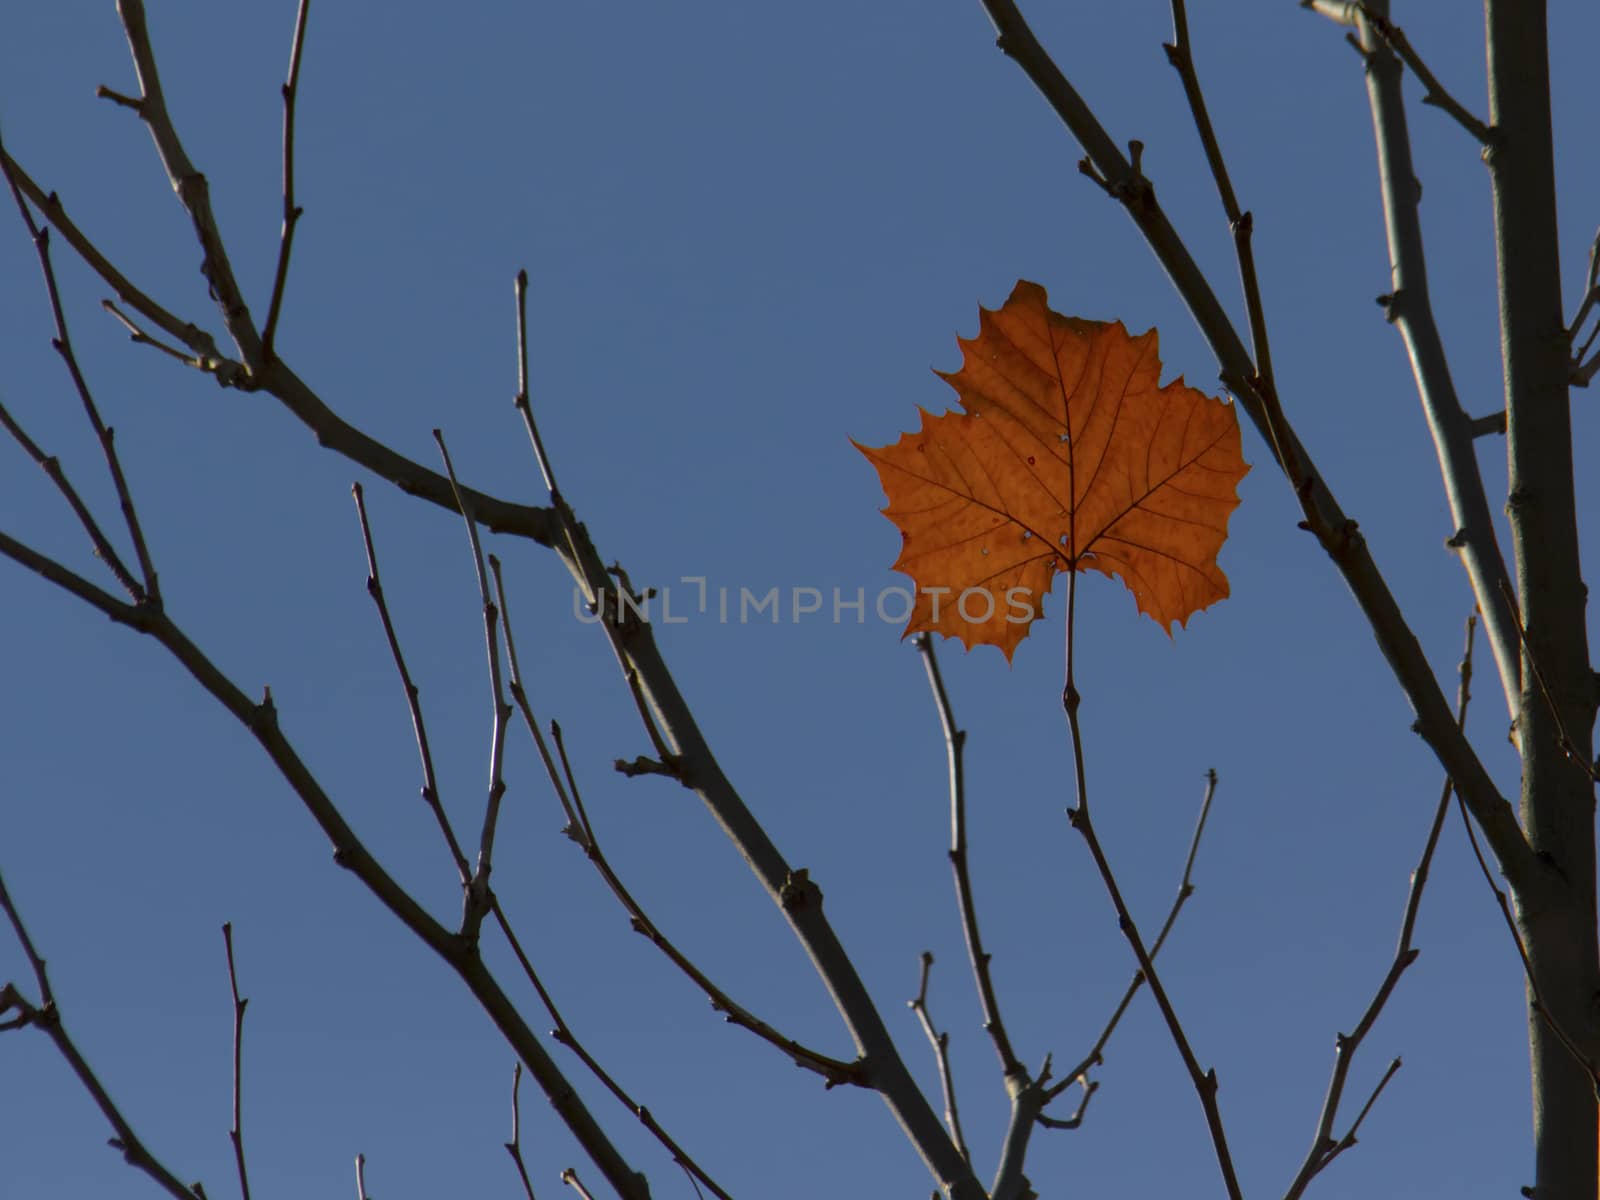 Single leaf remains on treetop